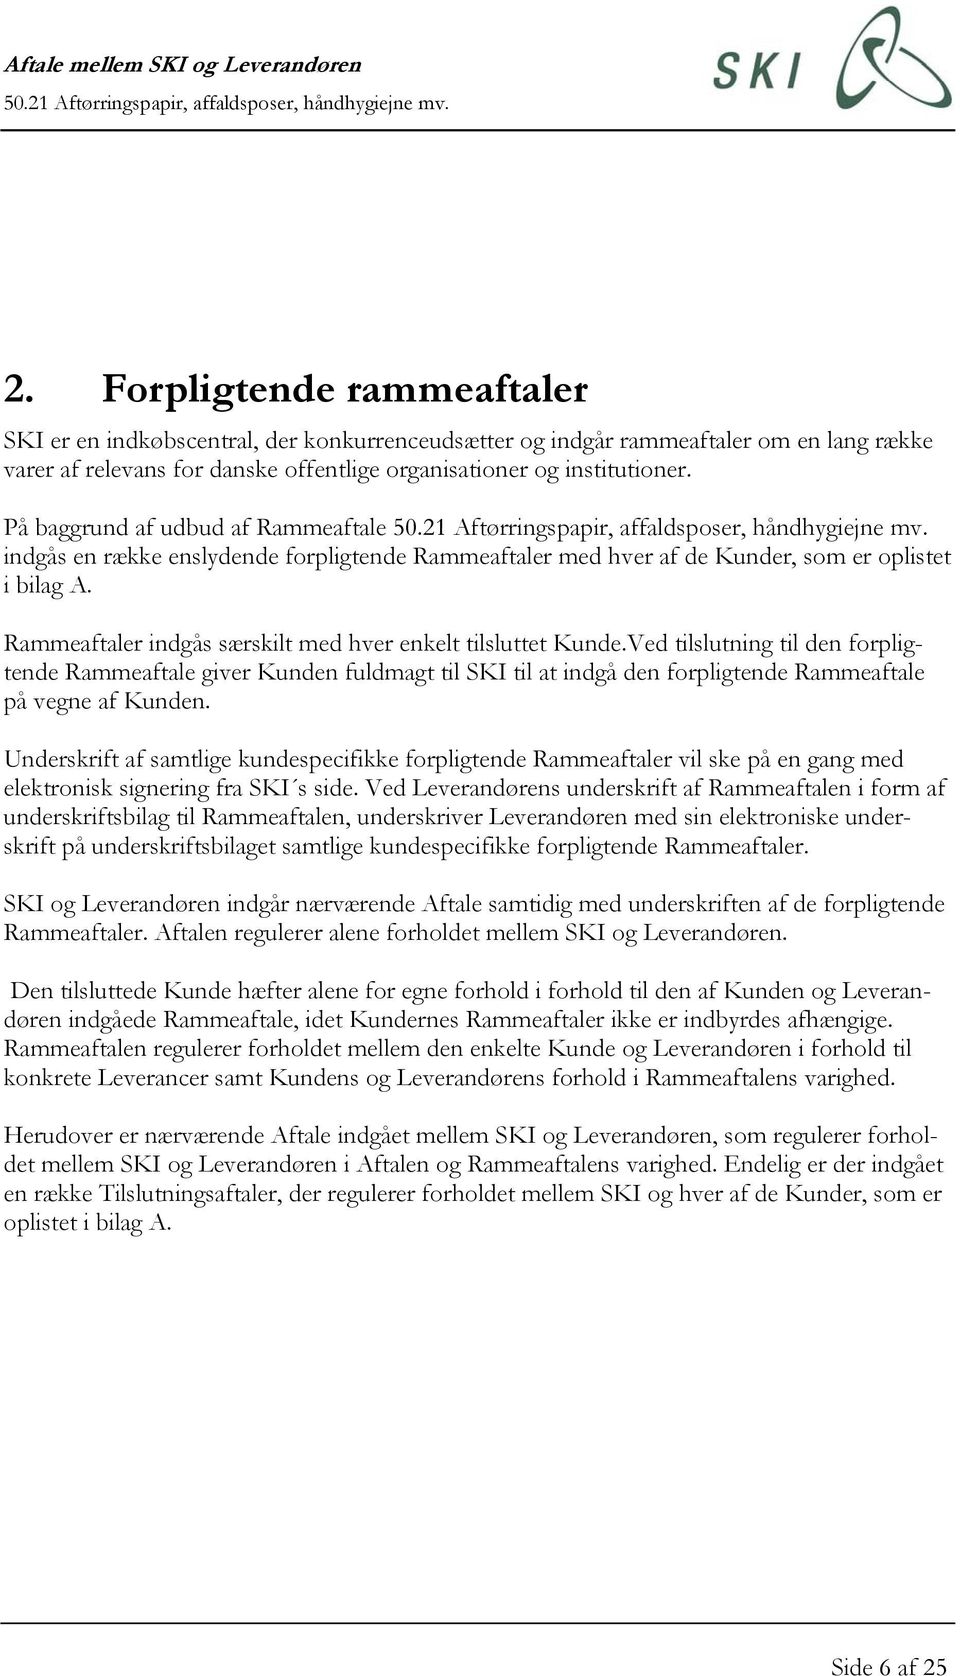 Aftale mellem SKI og Leverandøren Aftørringspapir, affaldsposer,  håndhygiejne mv. - PDF Gratis download